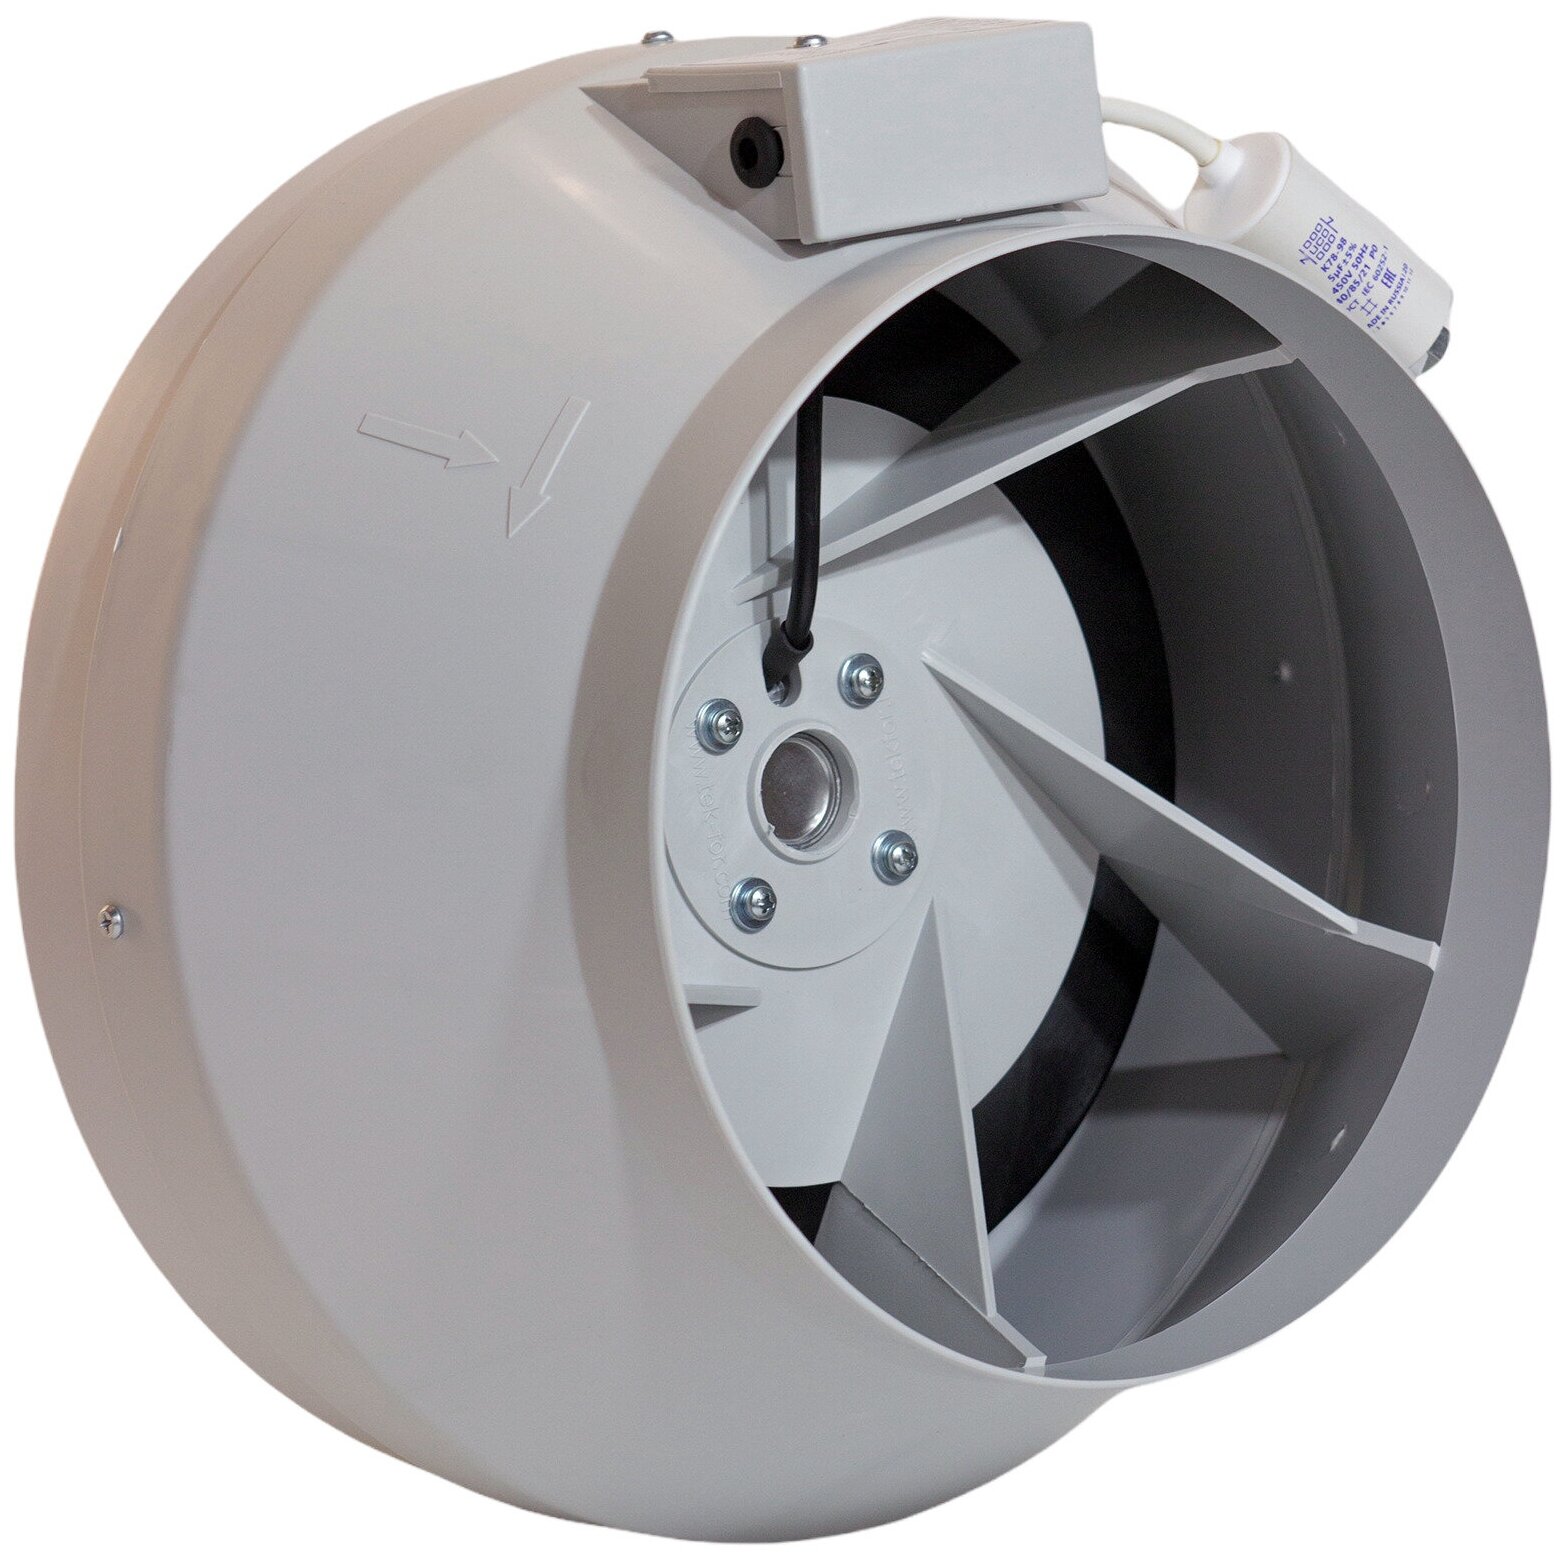 Вентилятор канальный круглый ВКК-250 V, 220В, 1420 м3/час, 500 Па, 220 Вт, IP 54, для круглых воздуховодов диаметром 250 мм, вытяжной или приточный - фотография № 3